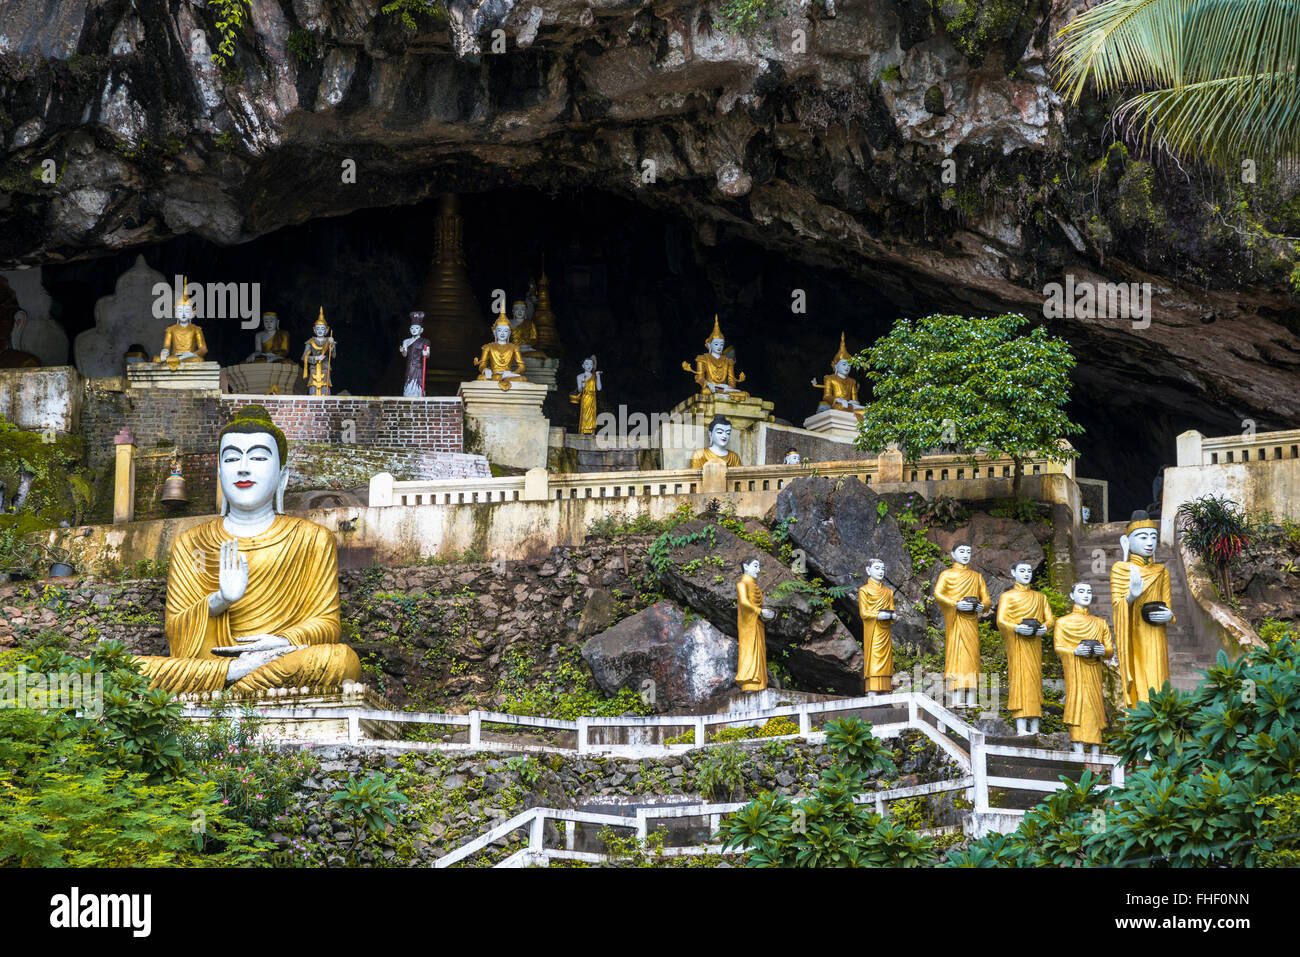 Buddha statues, pagodas, Kaw ka Thawng cave, Karst hills, near Hpa-an, Karen or Kayin State, Myanmar, Burma Stock Photo